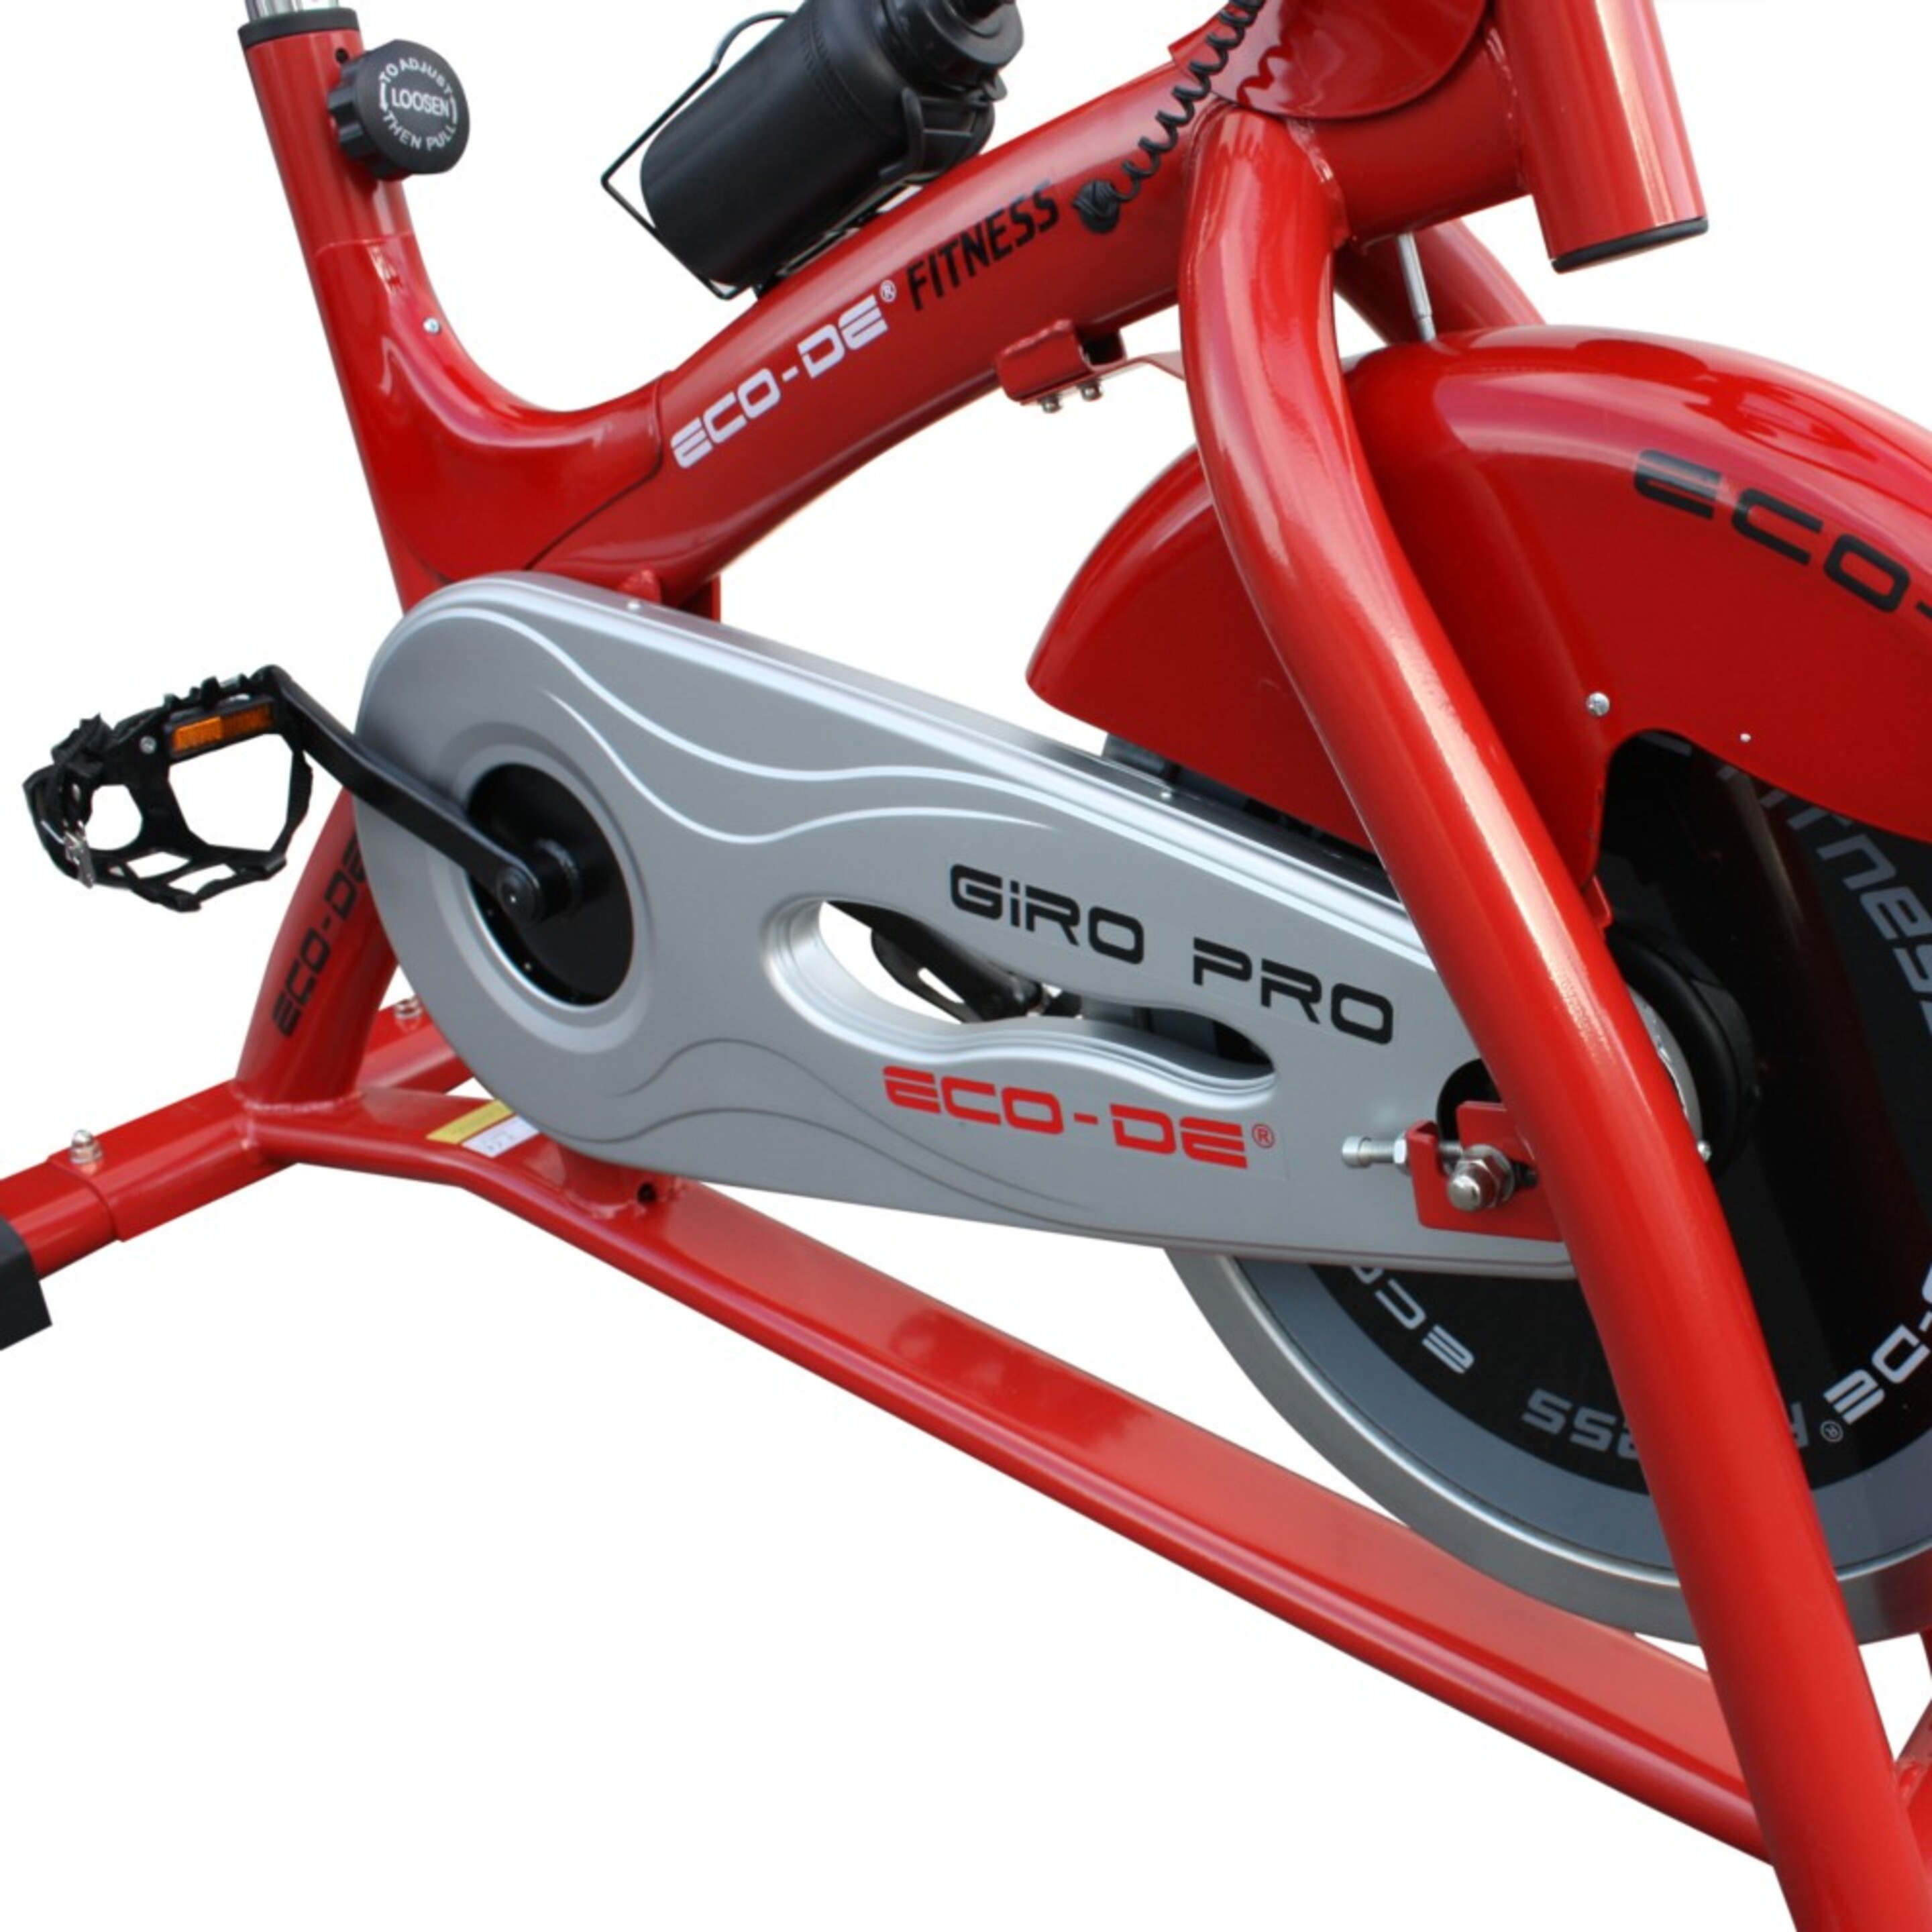 Eco-de Bicicleta De Spinning Semiprofesional. Pulsómetro. Pantalla Lcd Giro Pro